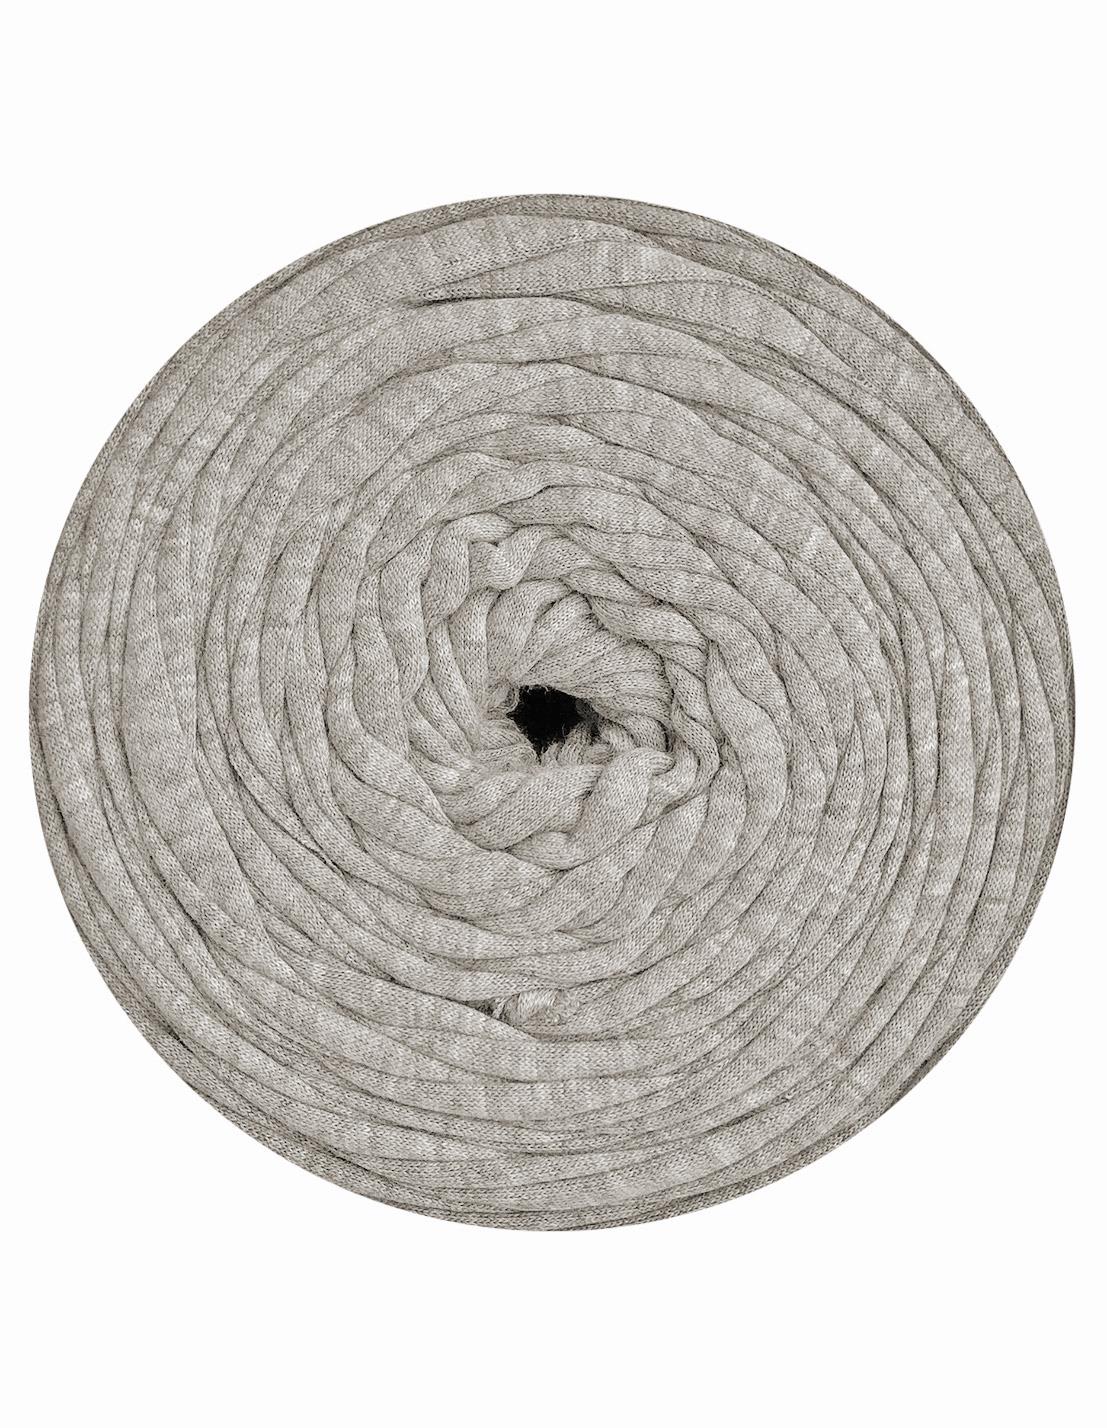 Light grey t-shirt yarn by Rescue Yarn (100-120m)